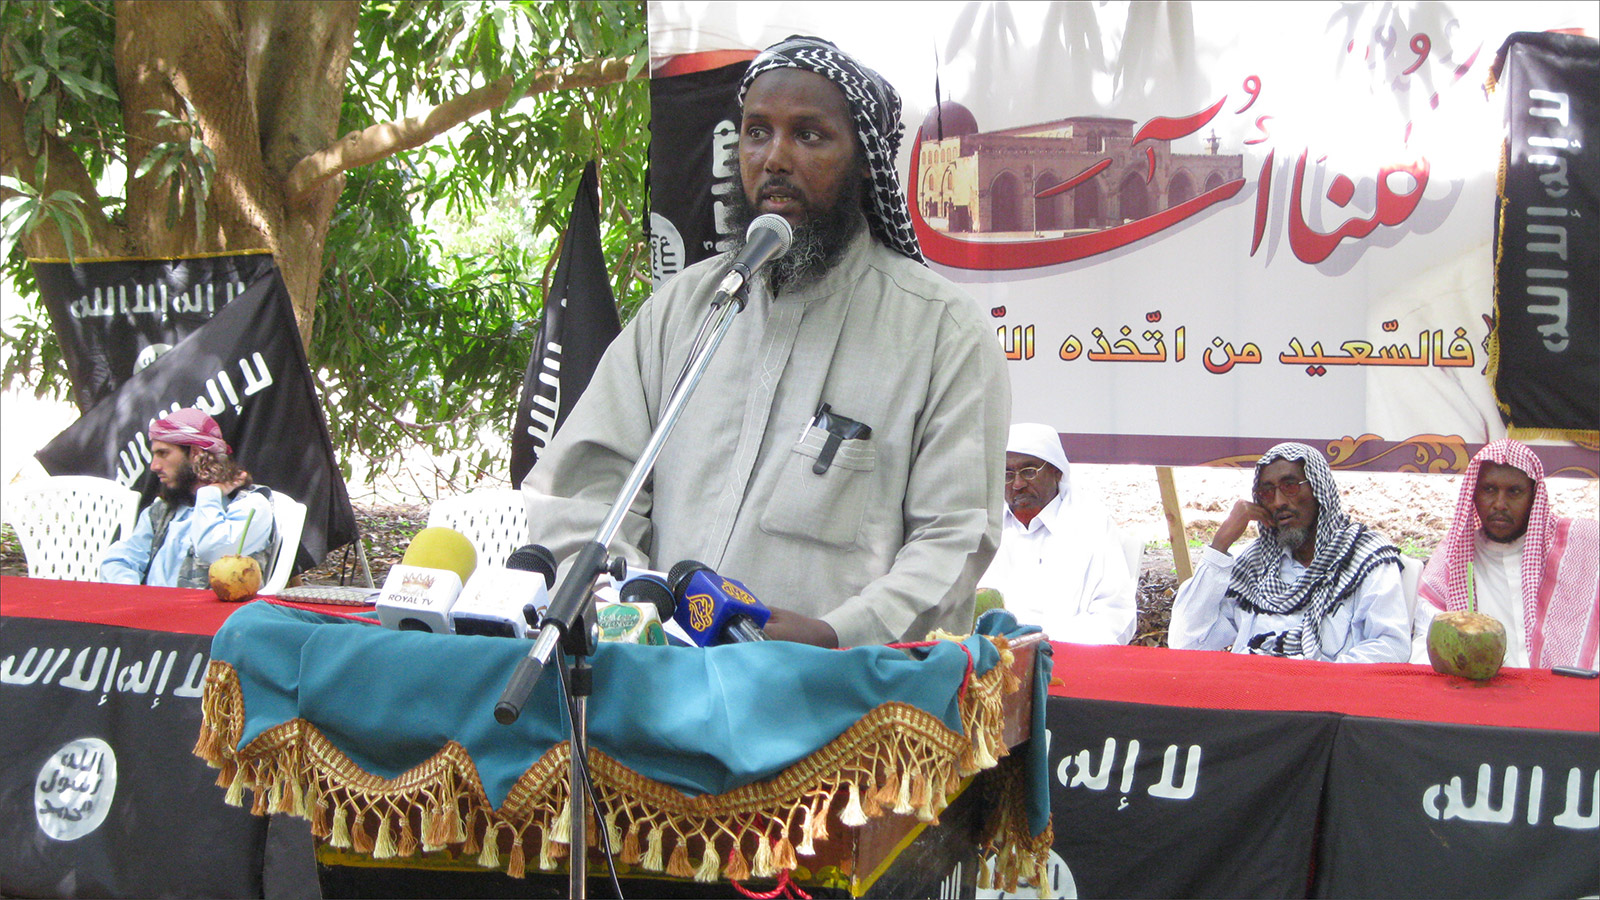 ‪مختار روبو خلال مشاركته في مناسبة التضامن مع أسامة بن لادن بعد مقتله في مدينة أفجوي على بعد 30 كلم جنوب مقديشو عام 2011‬  (الجزيرة)